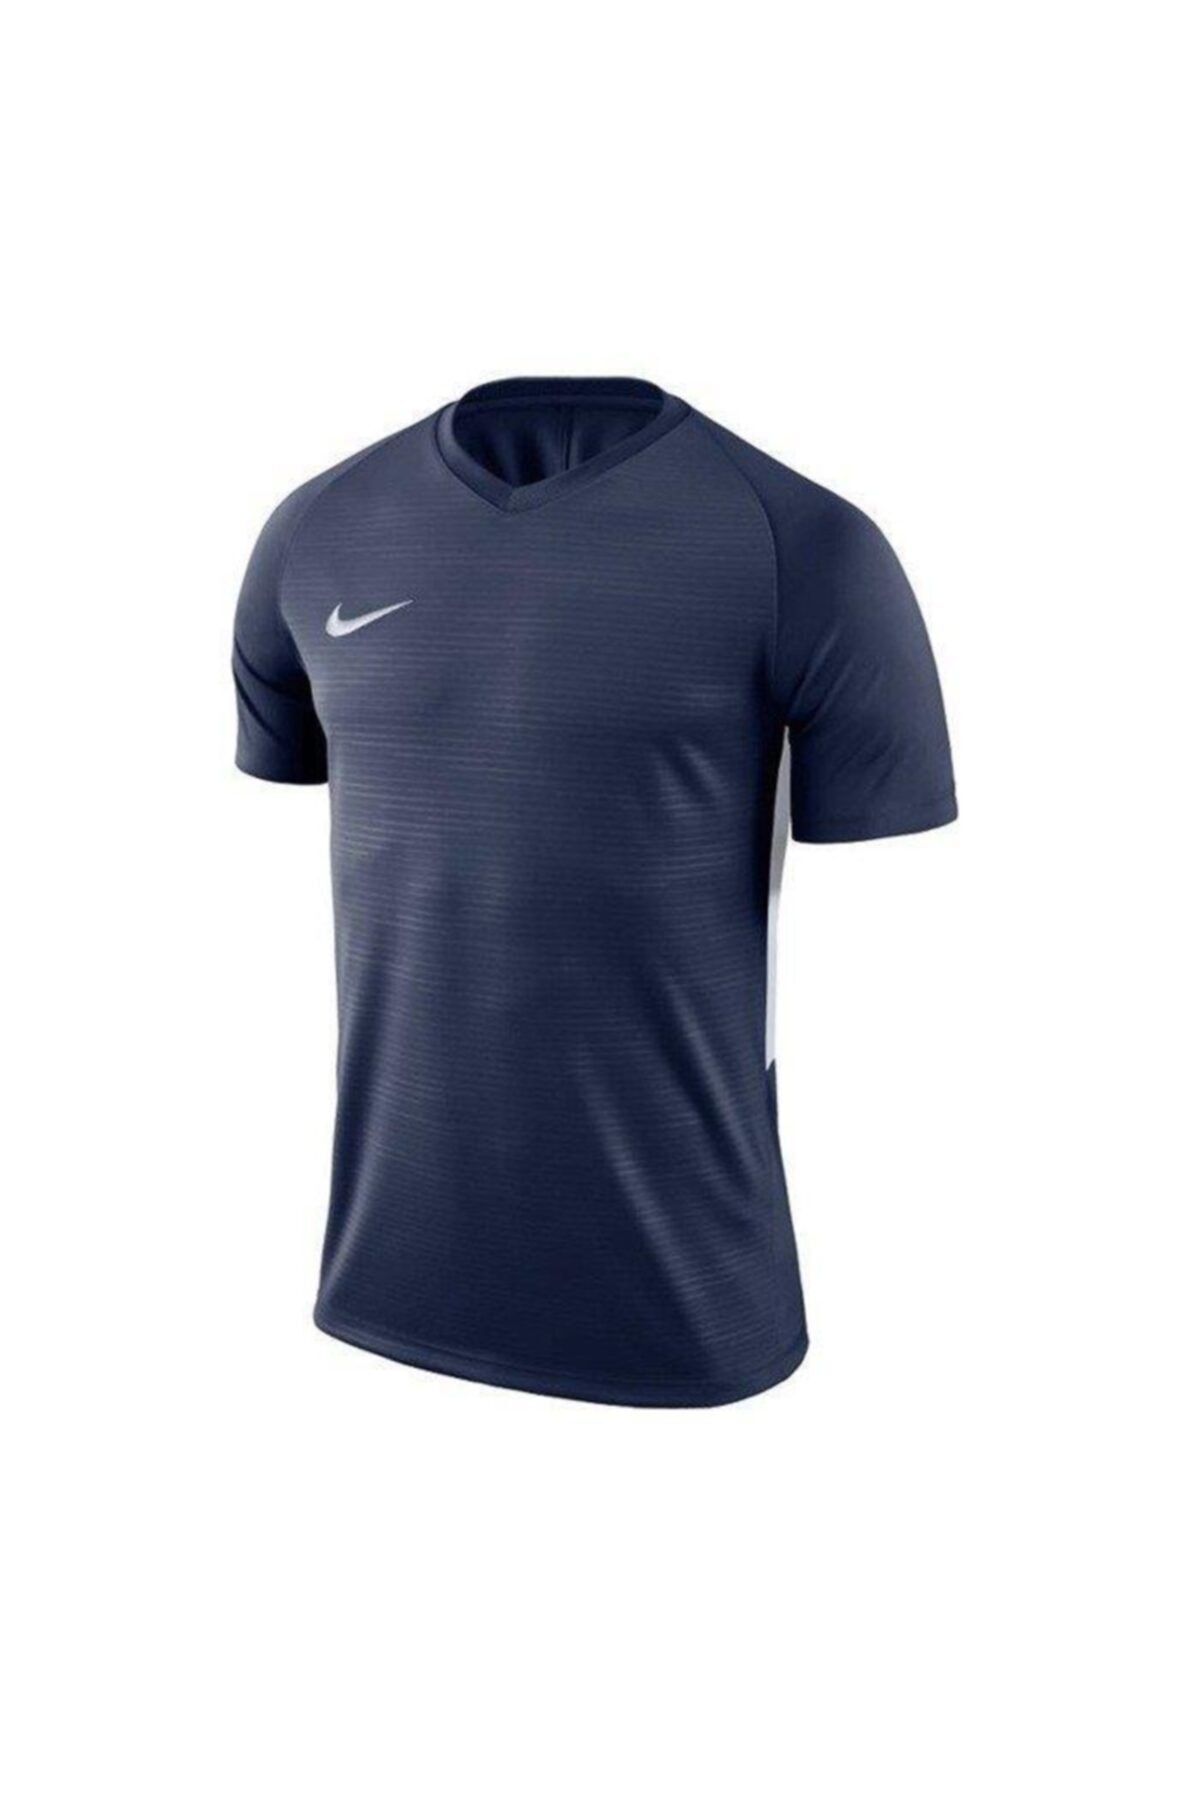 Nike Unisex Lacivert Futbol Forması 894111-411